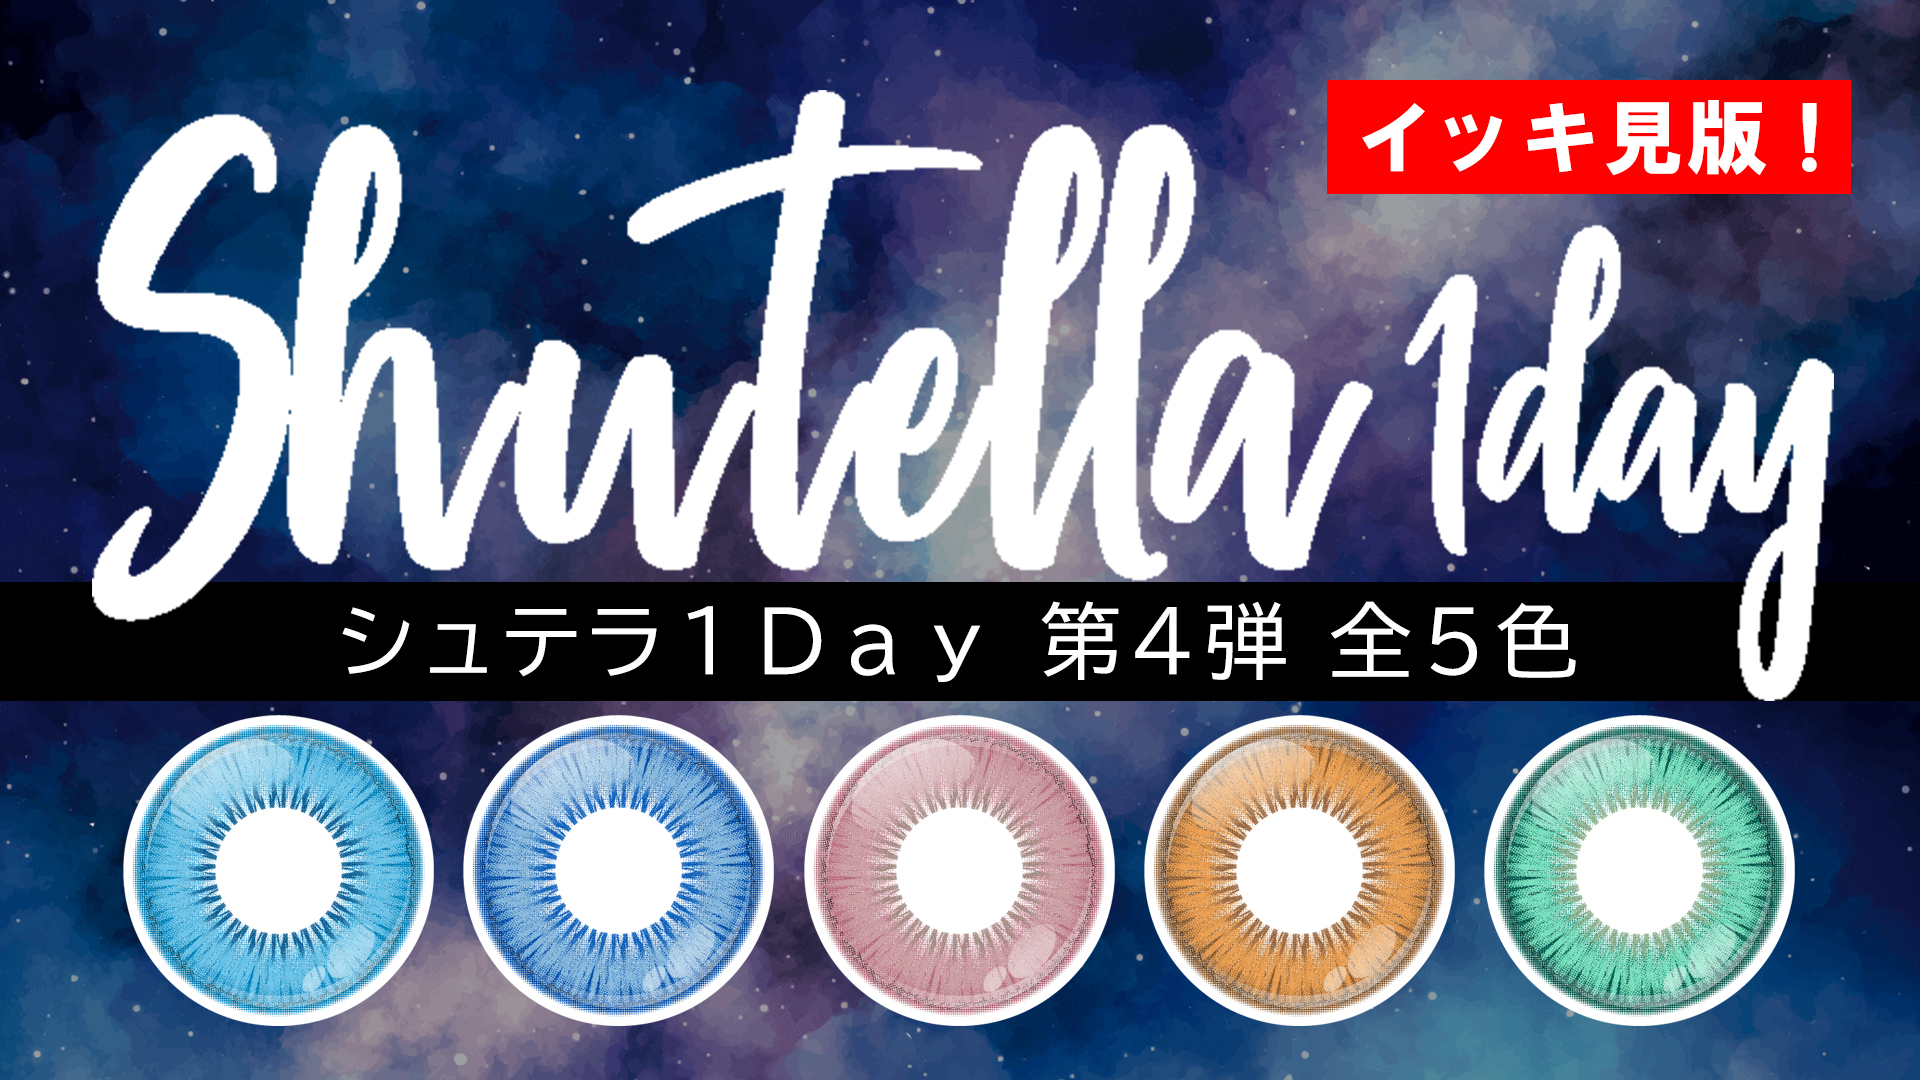 【新色】Shutella(シュテラ) 1Day第4弾 全5色 一気見!【10/23発売!】